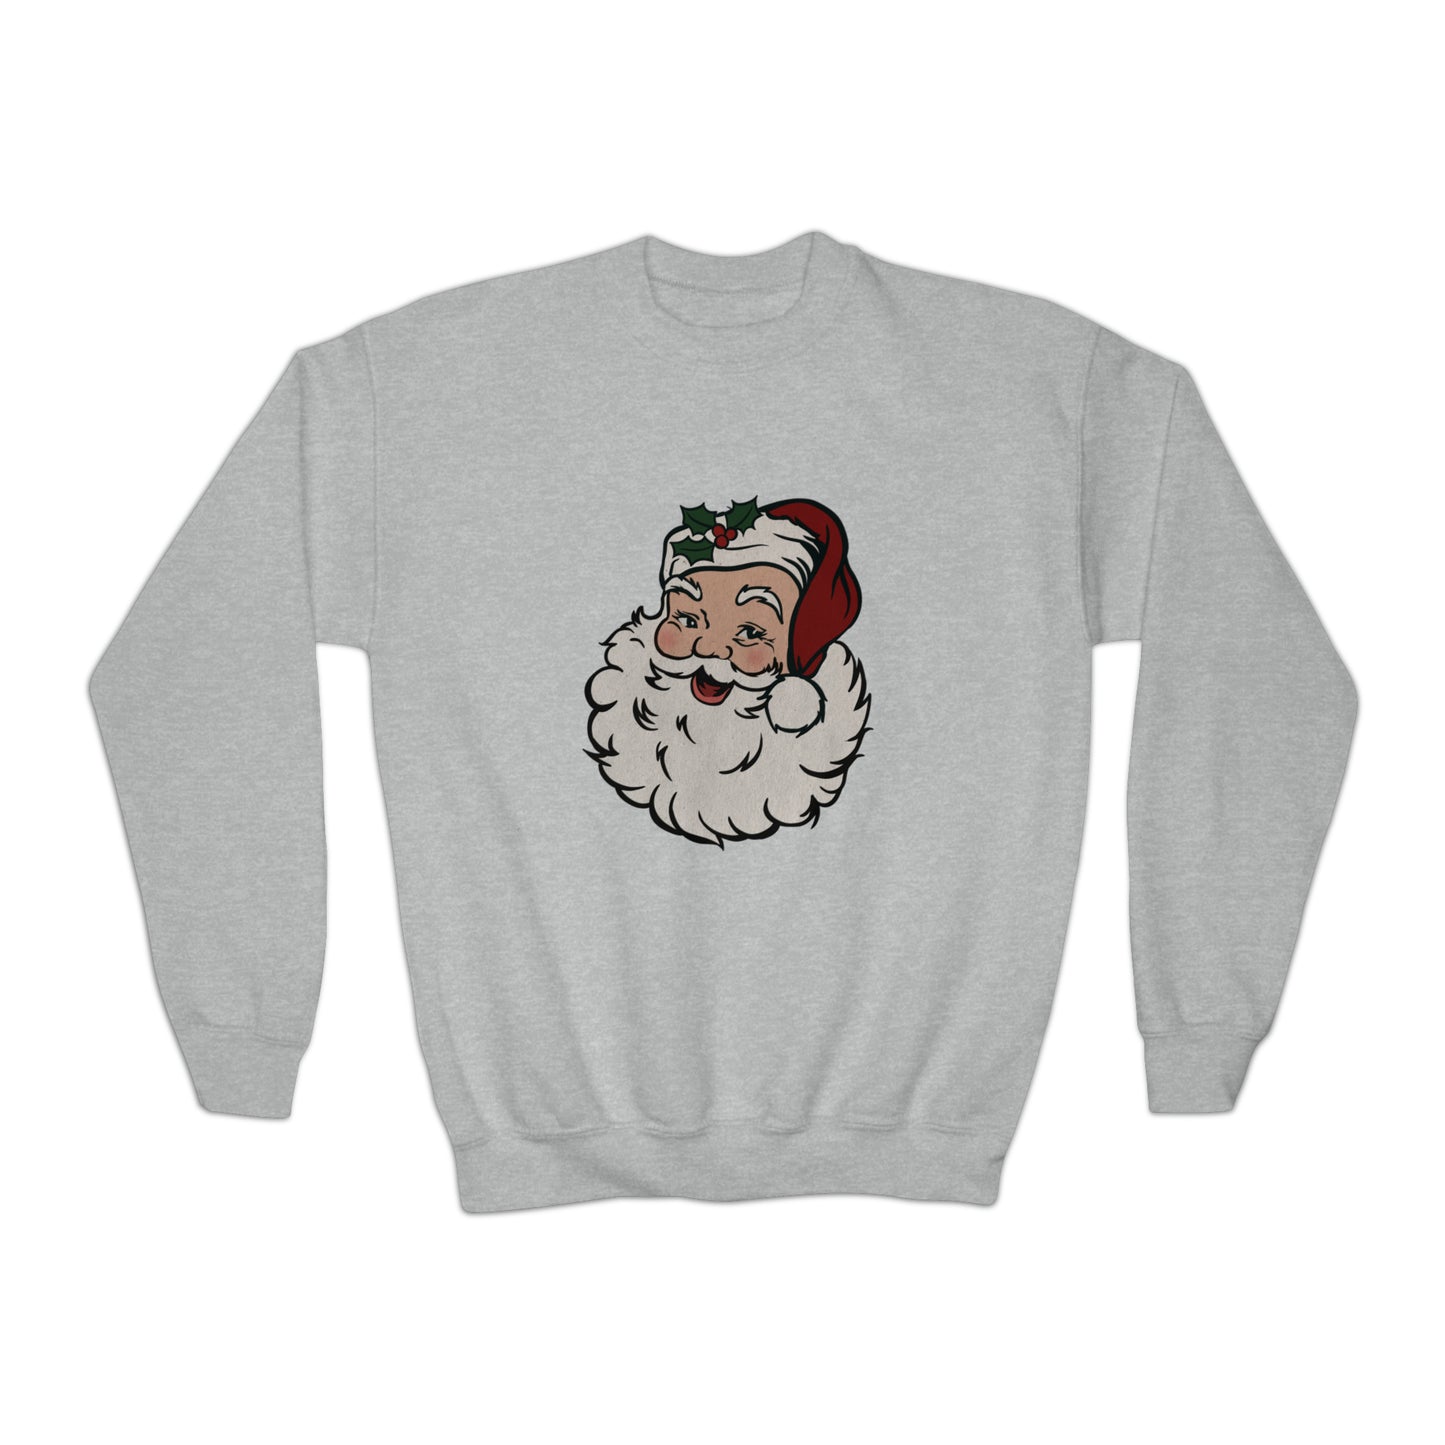 Retro Santa Youth Crewneck Sweatshirt